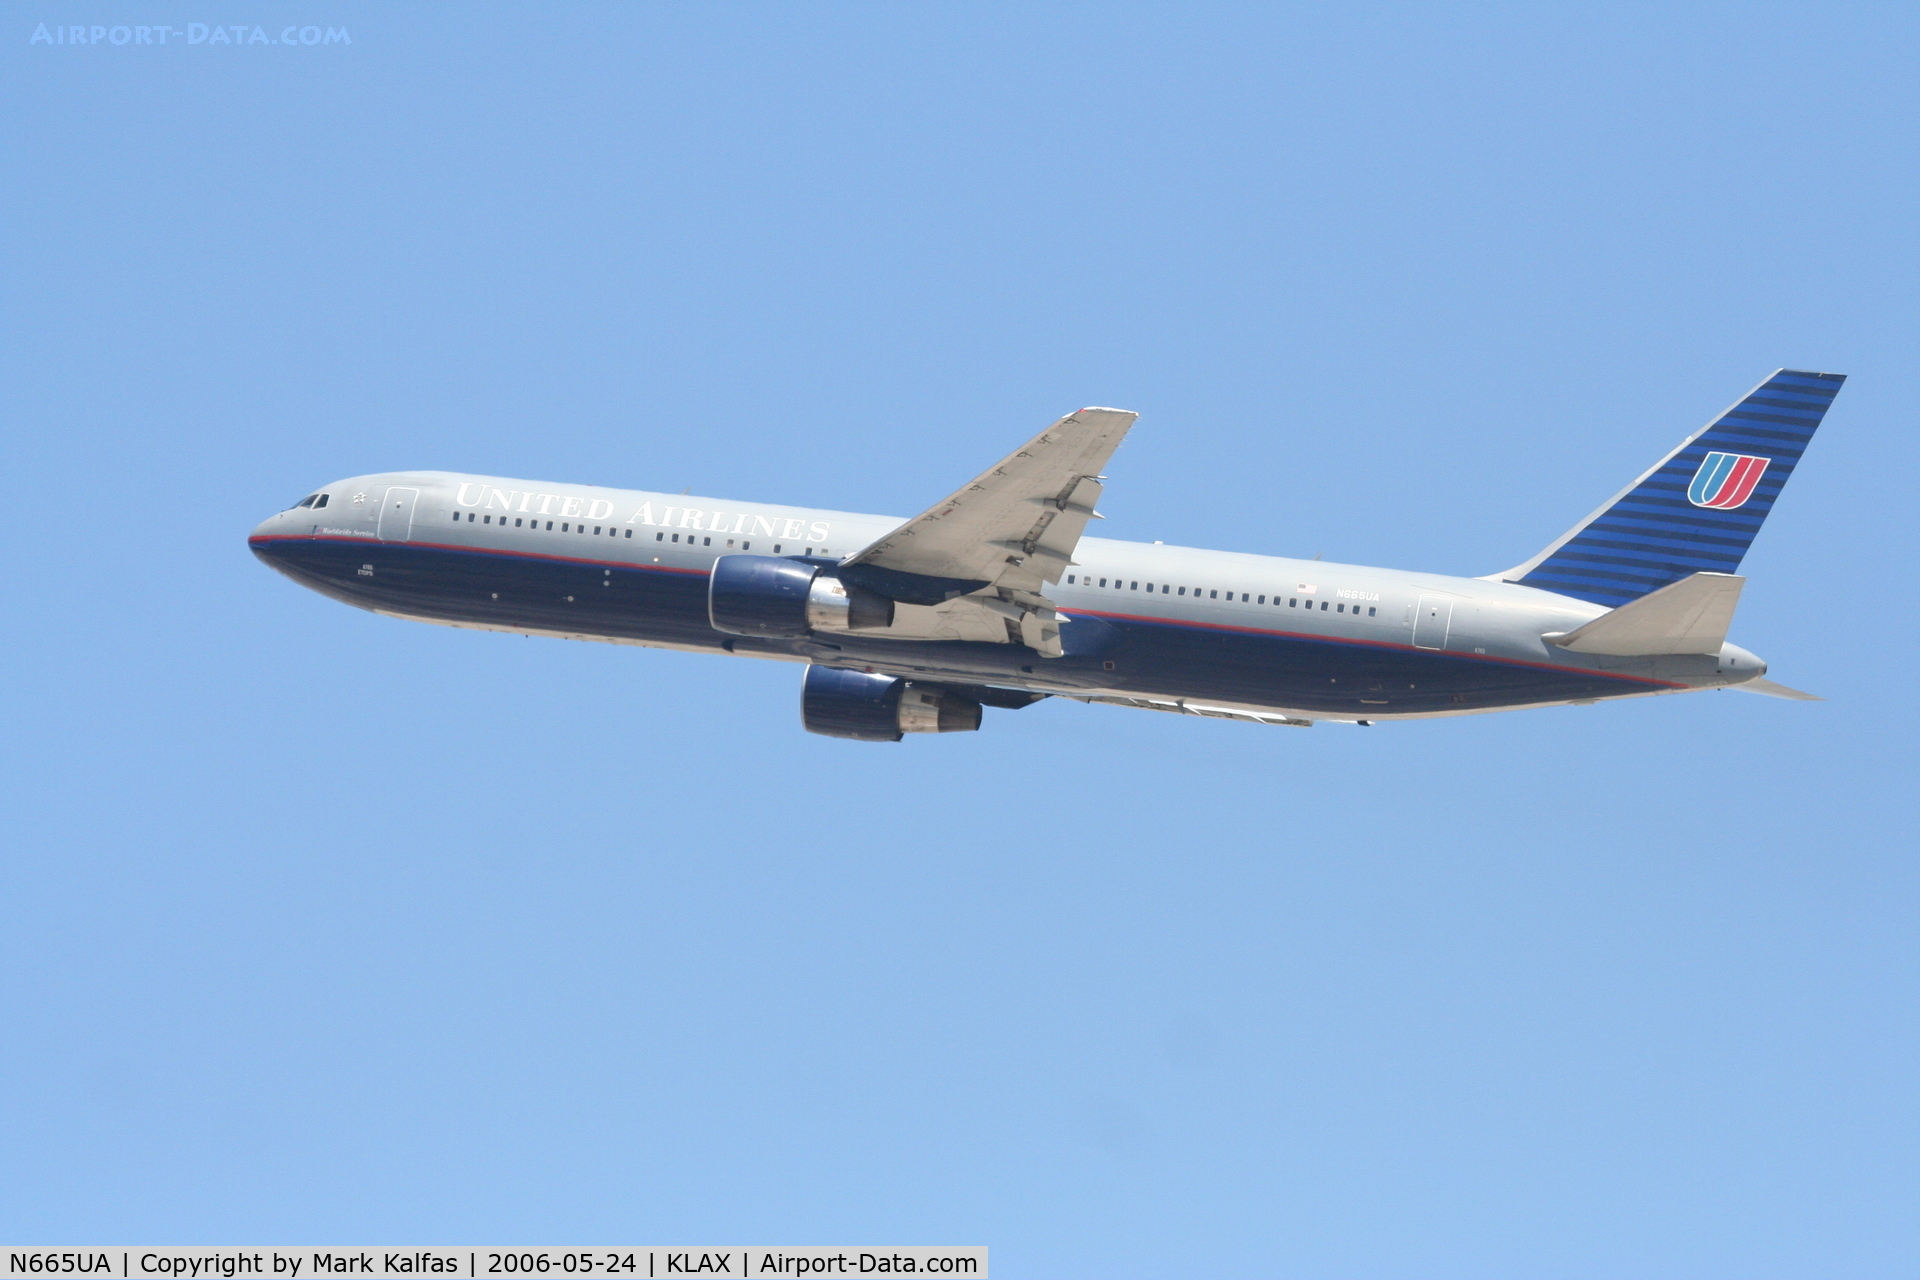 N665UA, 1998 Boeing 767-322 C/N 29237, United Airlines 767-322, N665UA departs KLAX RWY 25R